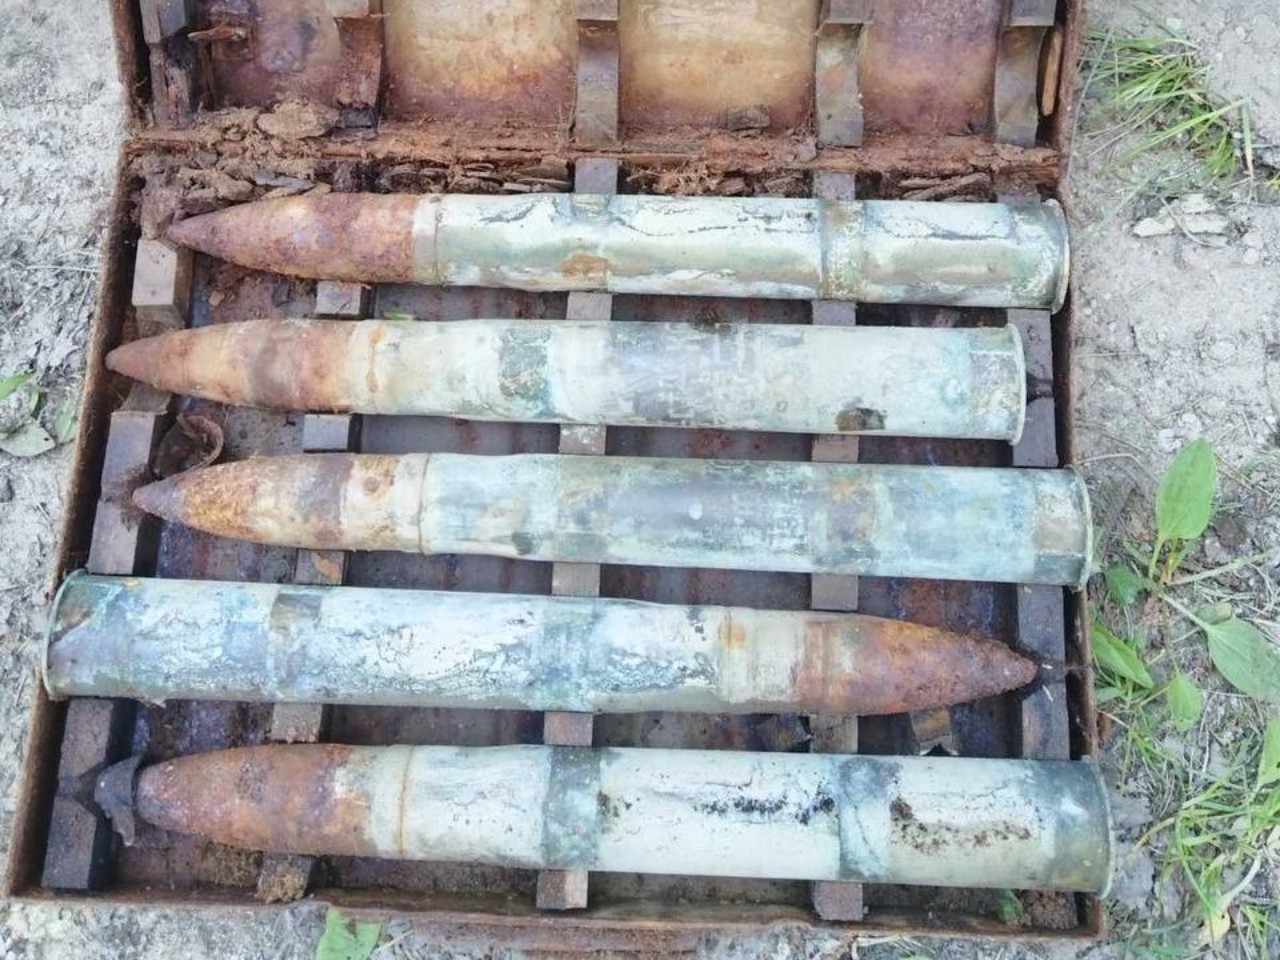 Ящики со снарядами времен ВОВ нашли в лесу в Волковысском районе